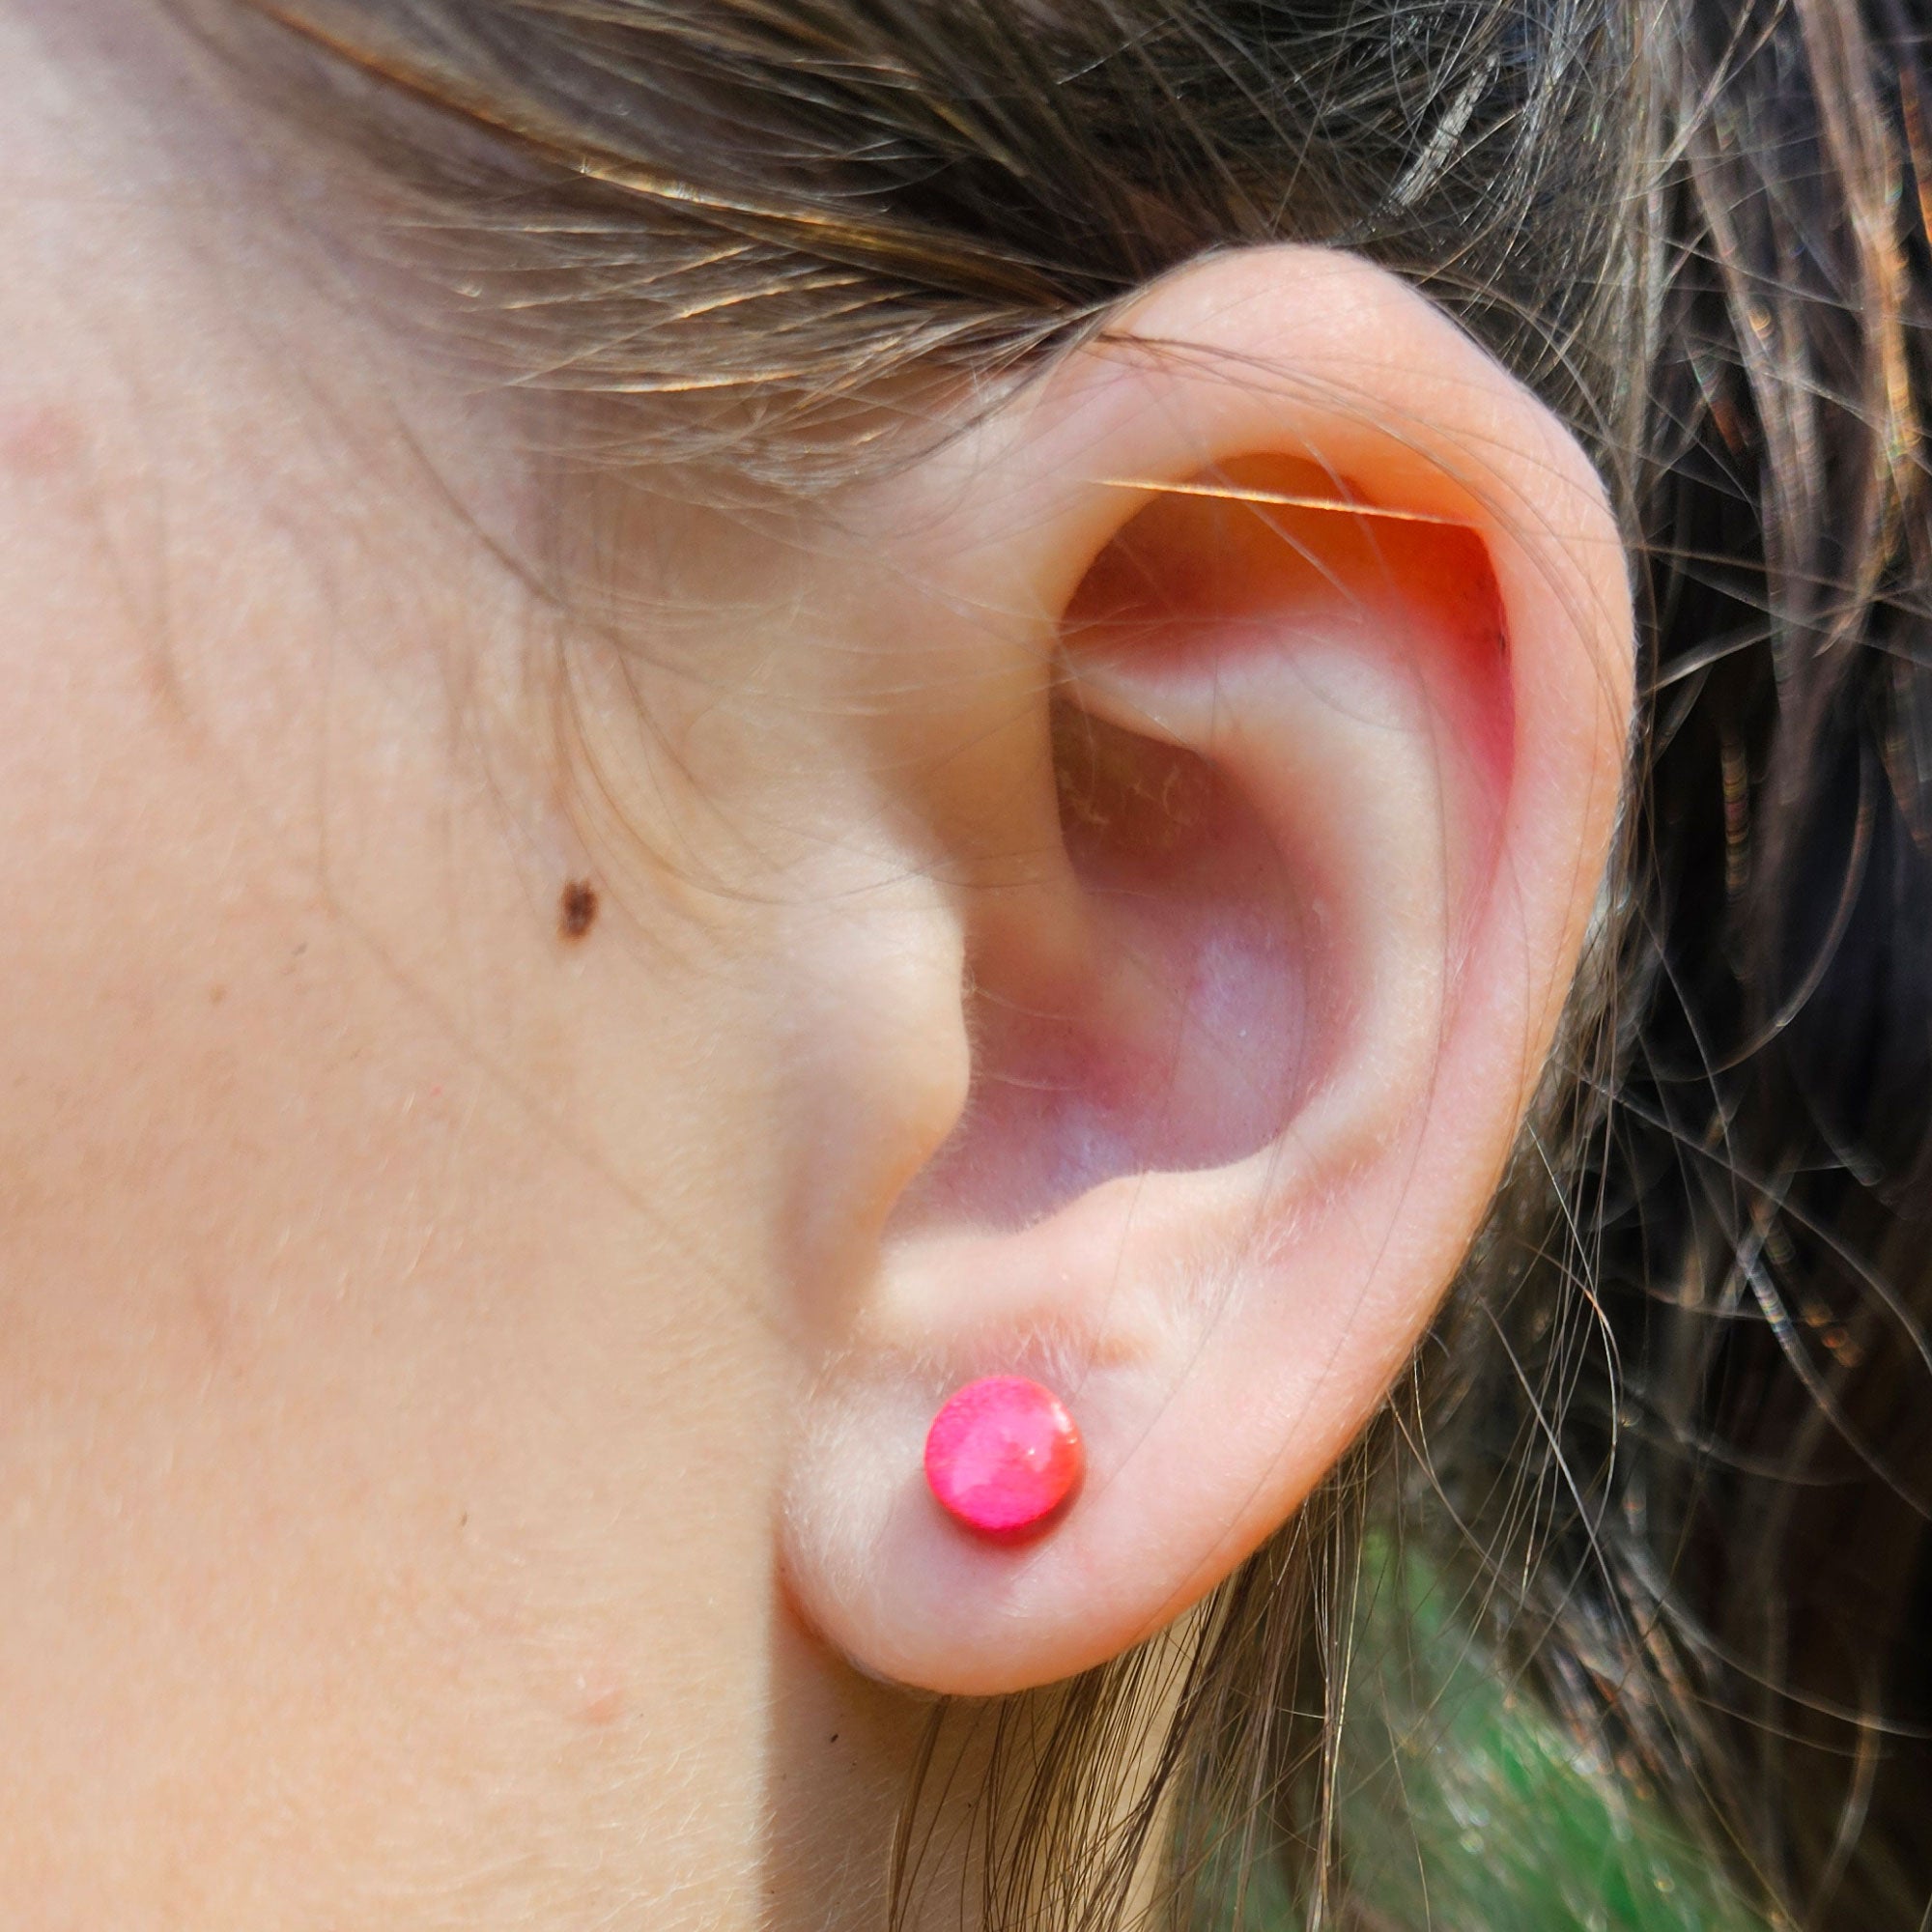 Mini heart earrings